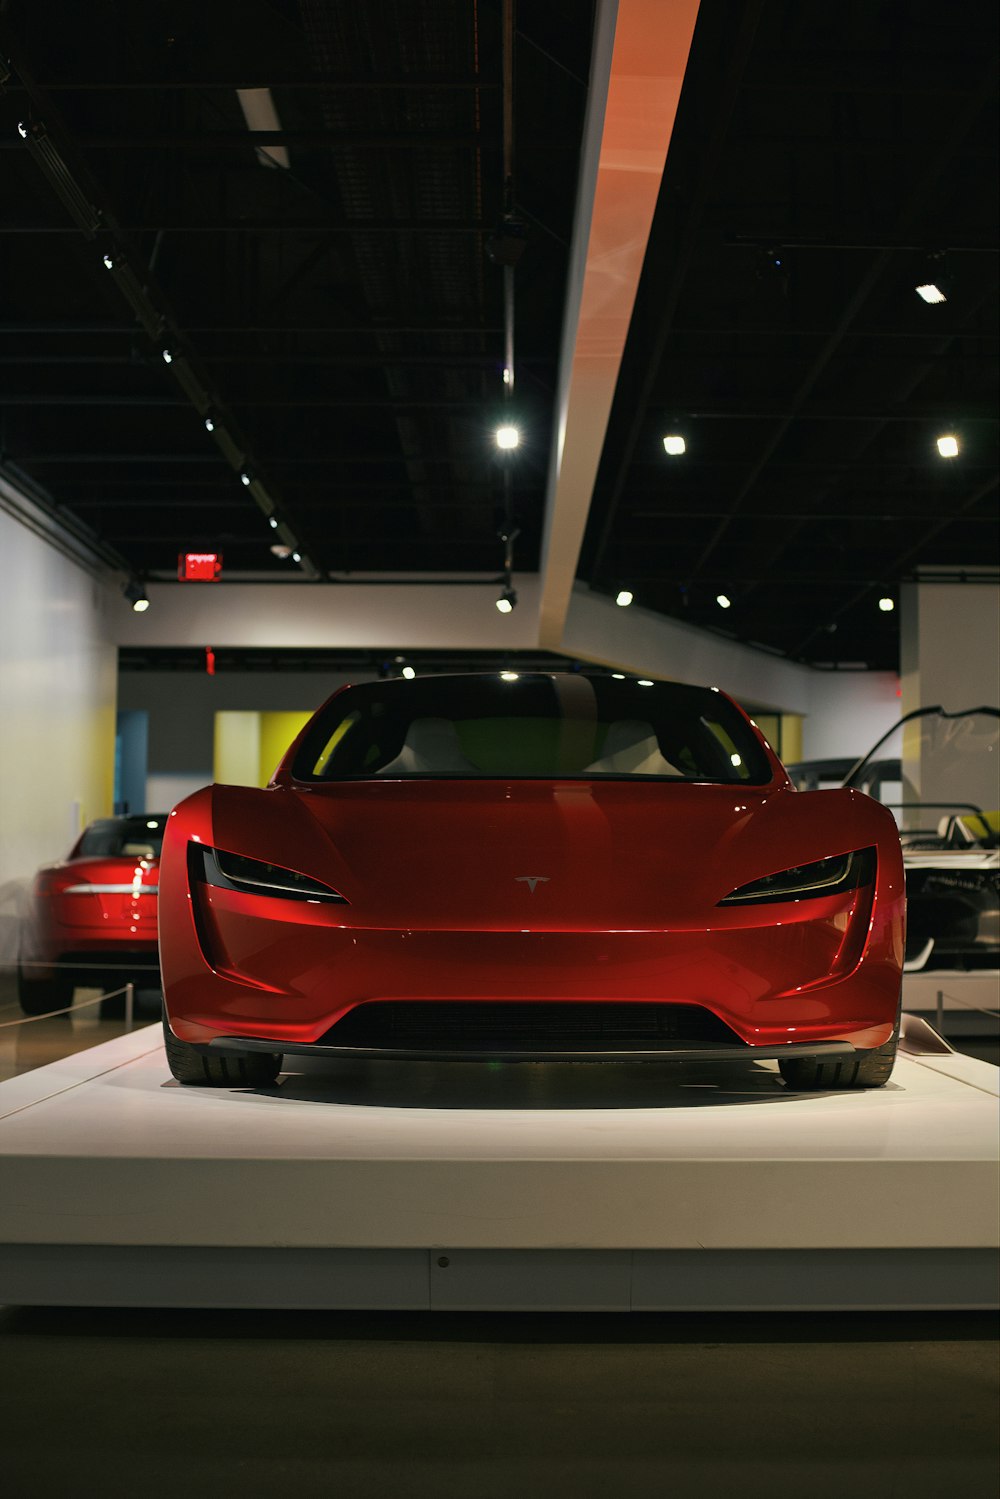 Roter Ferrari-Sportwagen in einem weißen Raum